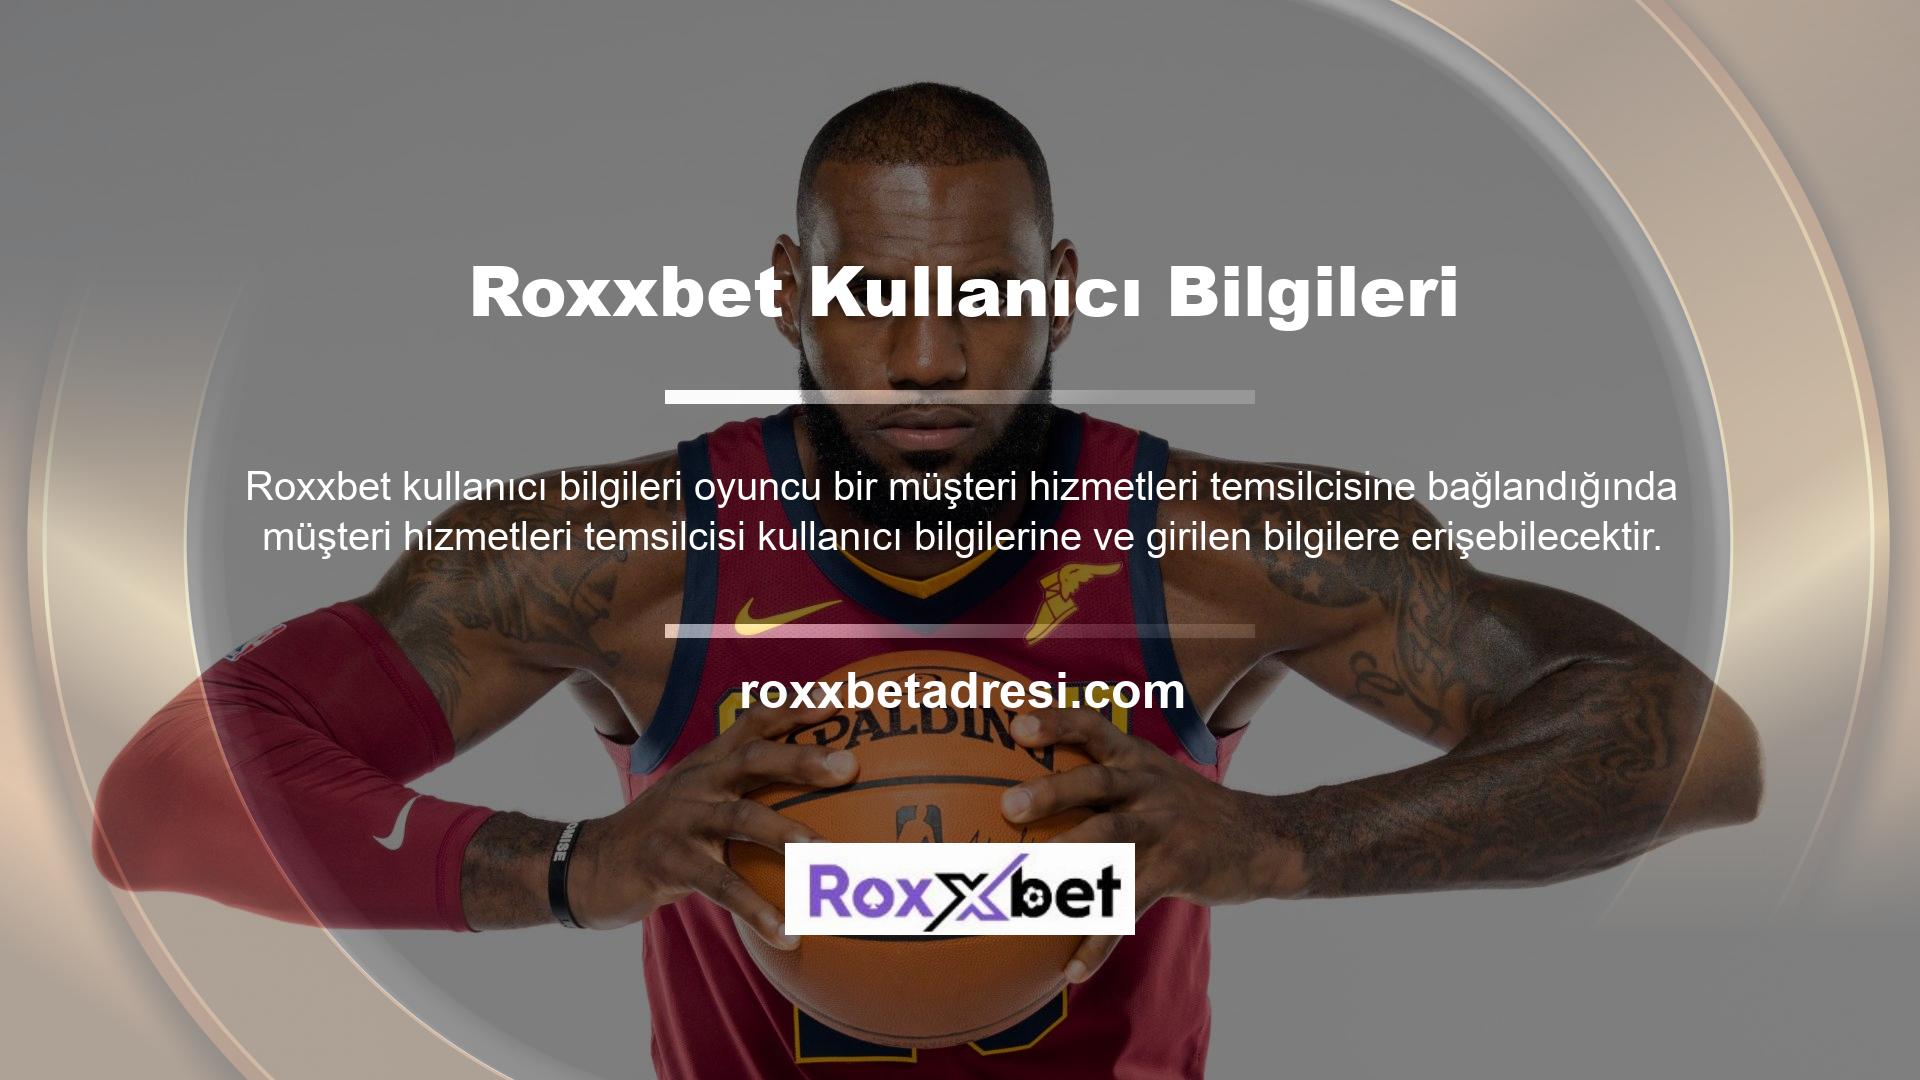 Roxxbet Bahis Sitesi, oyunculara talep edilen bilgileri sağlayan kaliteli bir hizmet sunmaya çalışmaktadır